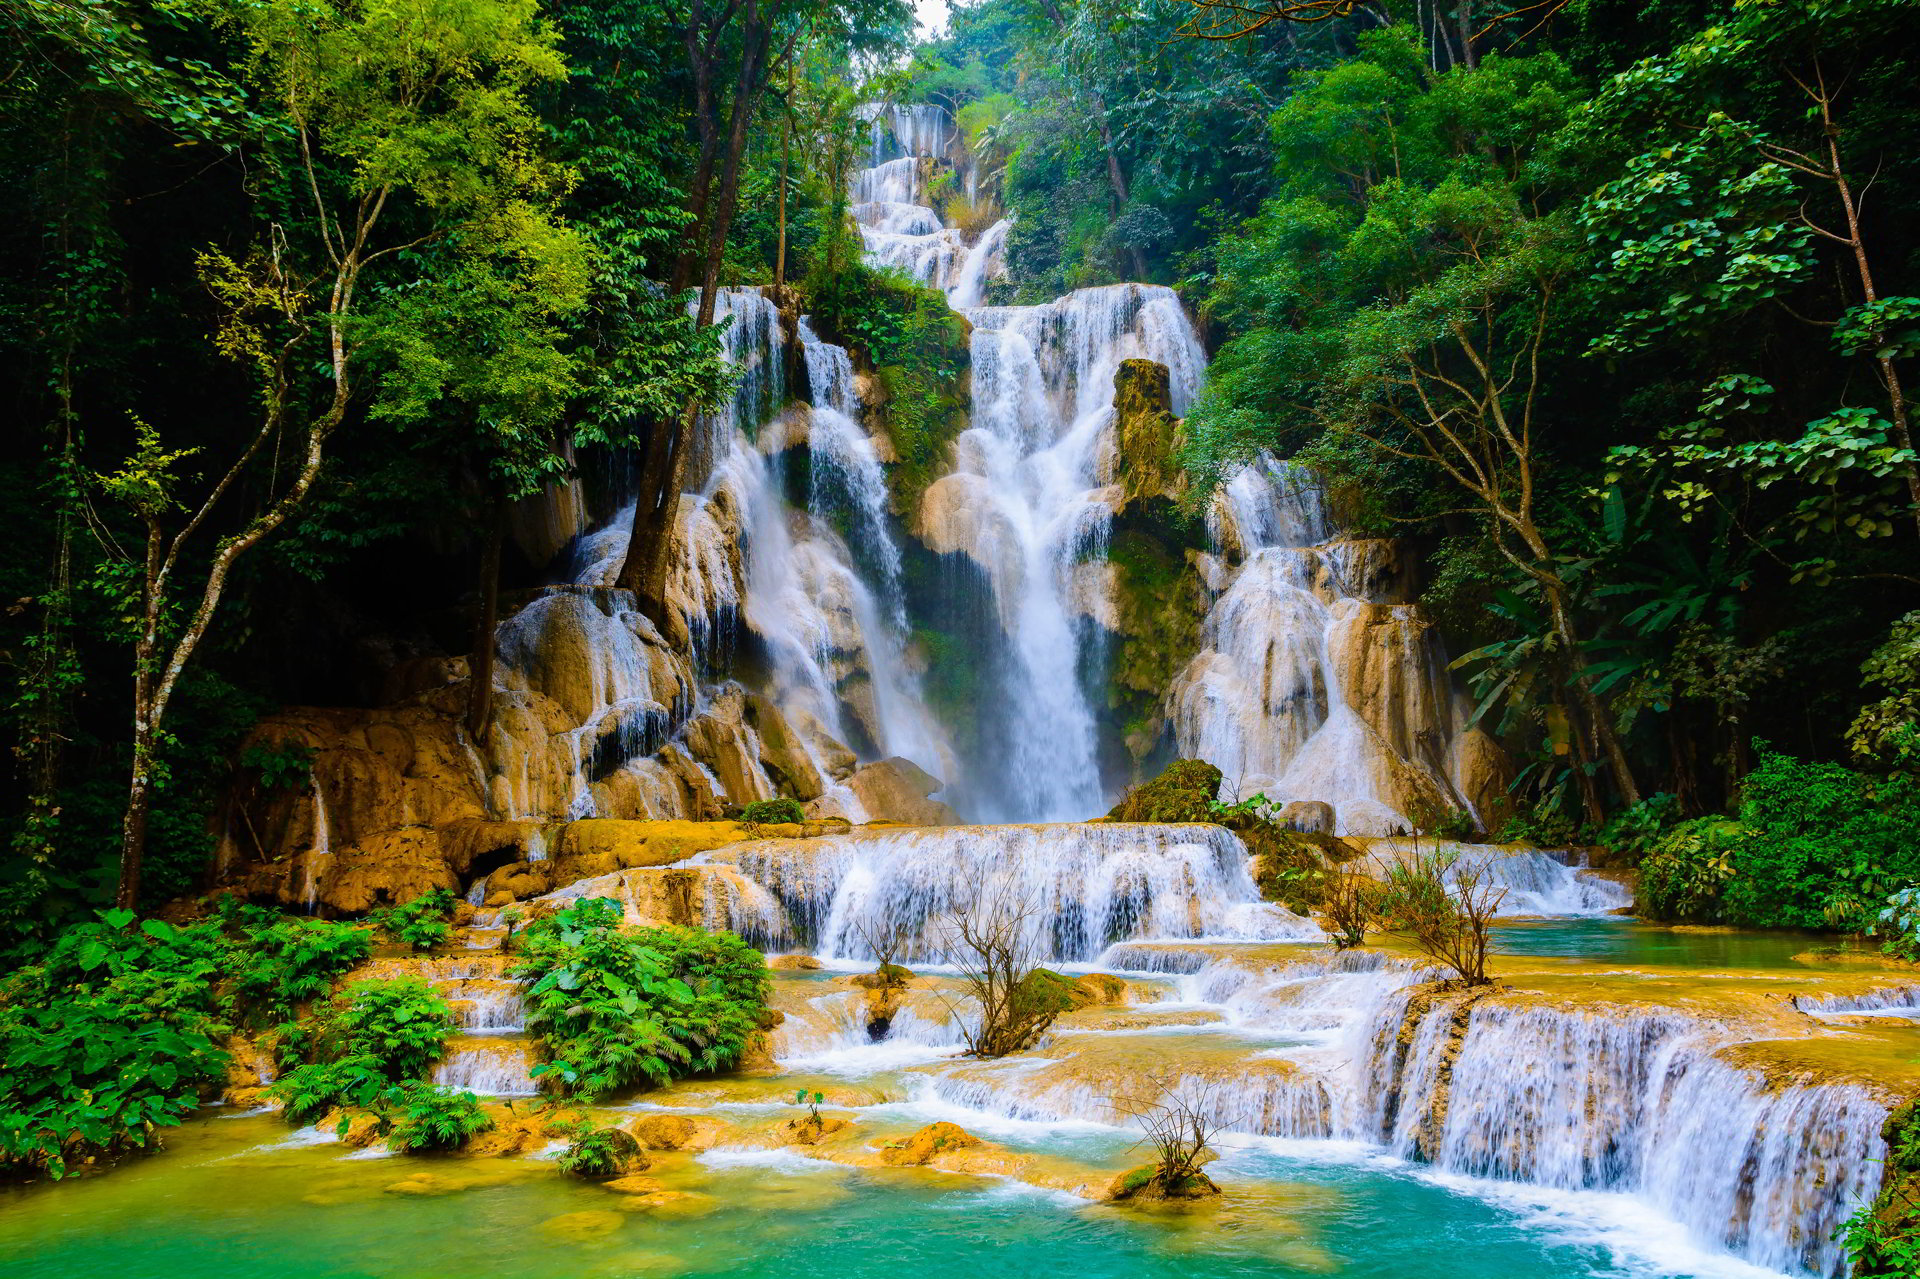 Thác Nước Ảnh: Vẻ đẹp tuyệt vời của những thác nước được tái hiện sống động trong những tác phẩm nghệ thuật ảnh. Những bức ảnh thác nước đẹp mắt sẽ khiến bạn cảm nhận được sự tươi mới và yên bình của thiên nhiên, đồng thời là một sự lựa chọn hoàn hảo để trang trí cho máy tính của bạn.